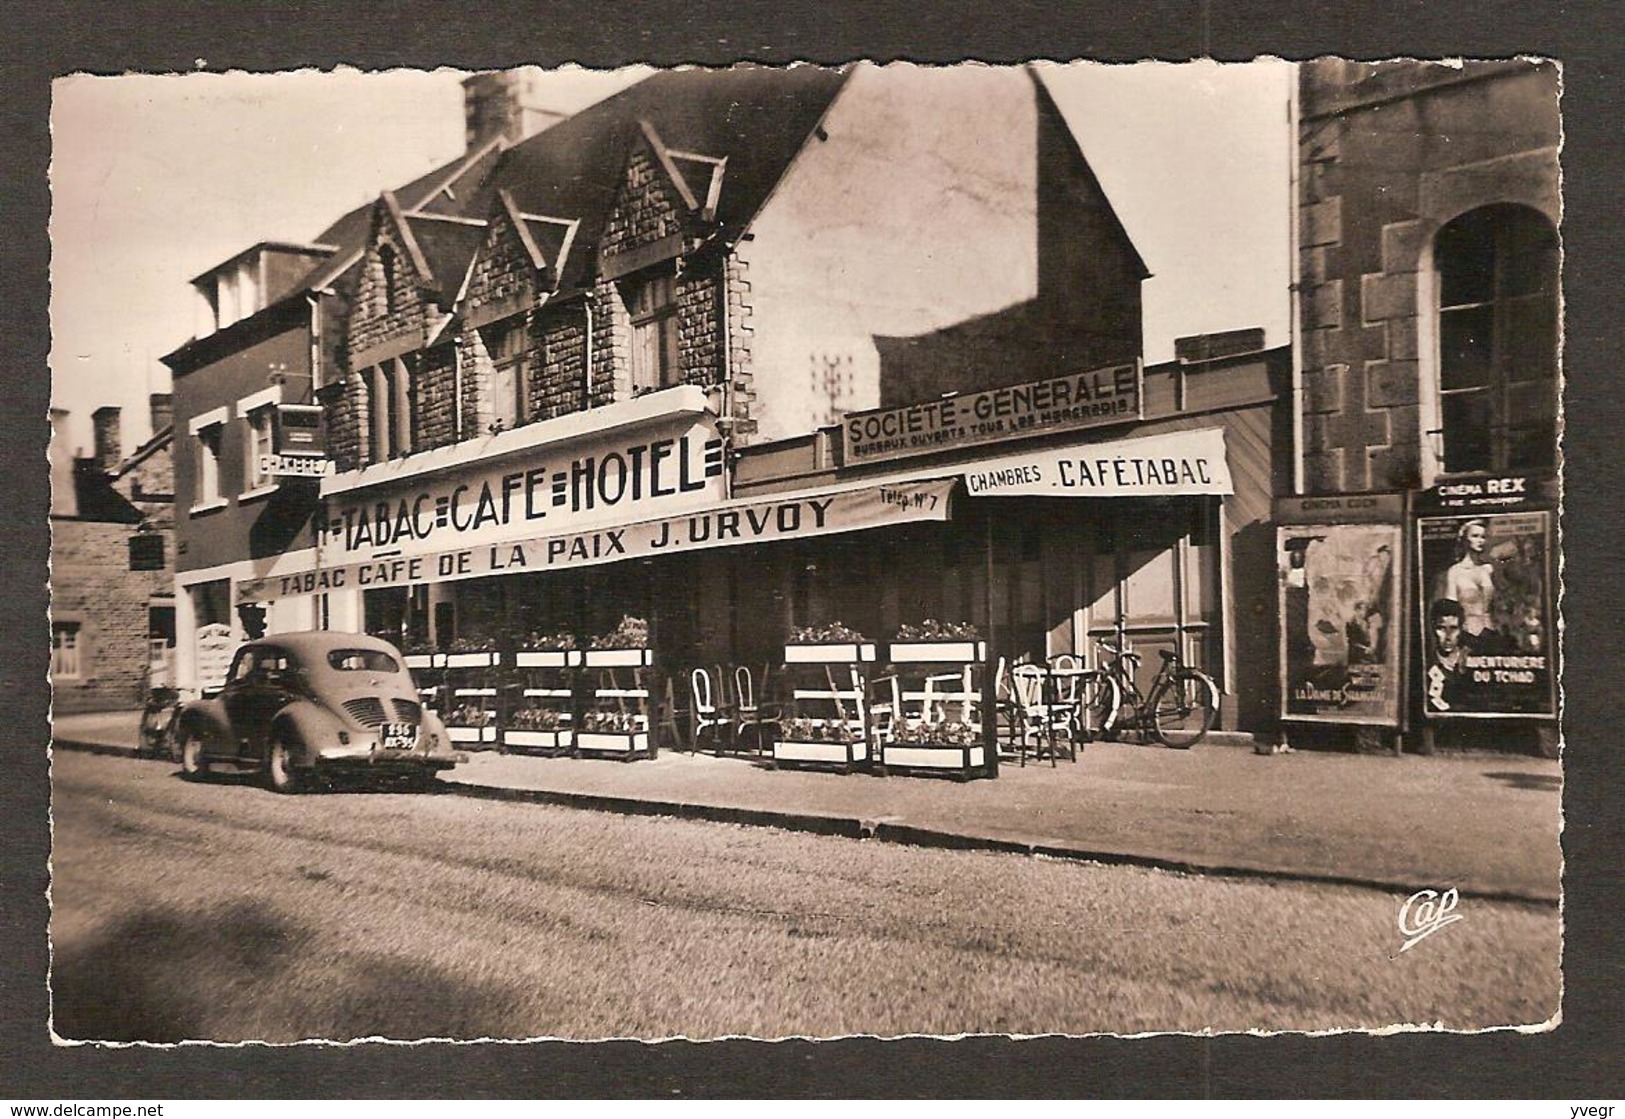 PONTORSON - ( 50 Manche) Café-Hôtel De La Paix , Tabacs ,J. Urvoy Propriétaire ( Belle 4 CV Renault ) Affiche Cinéma REX - Pontorson